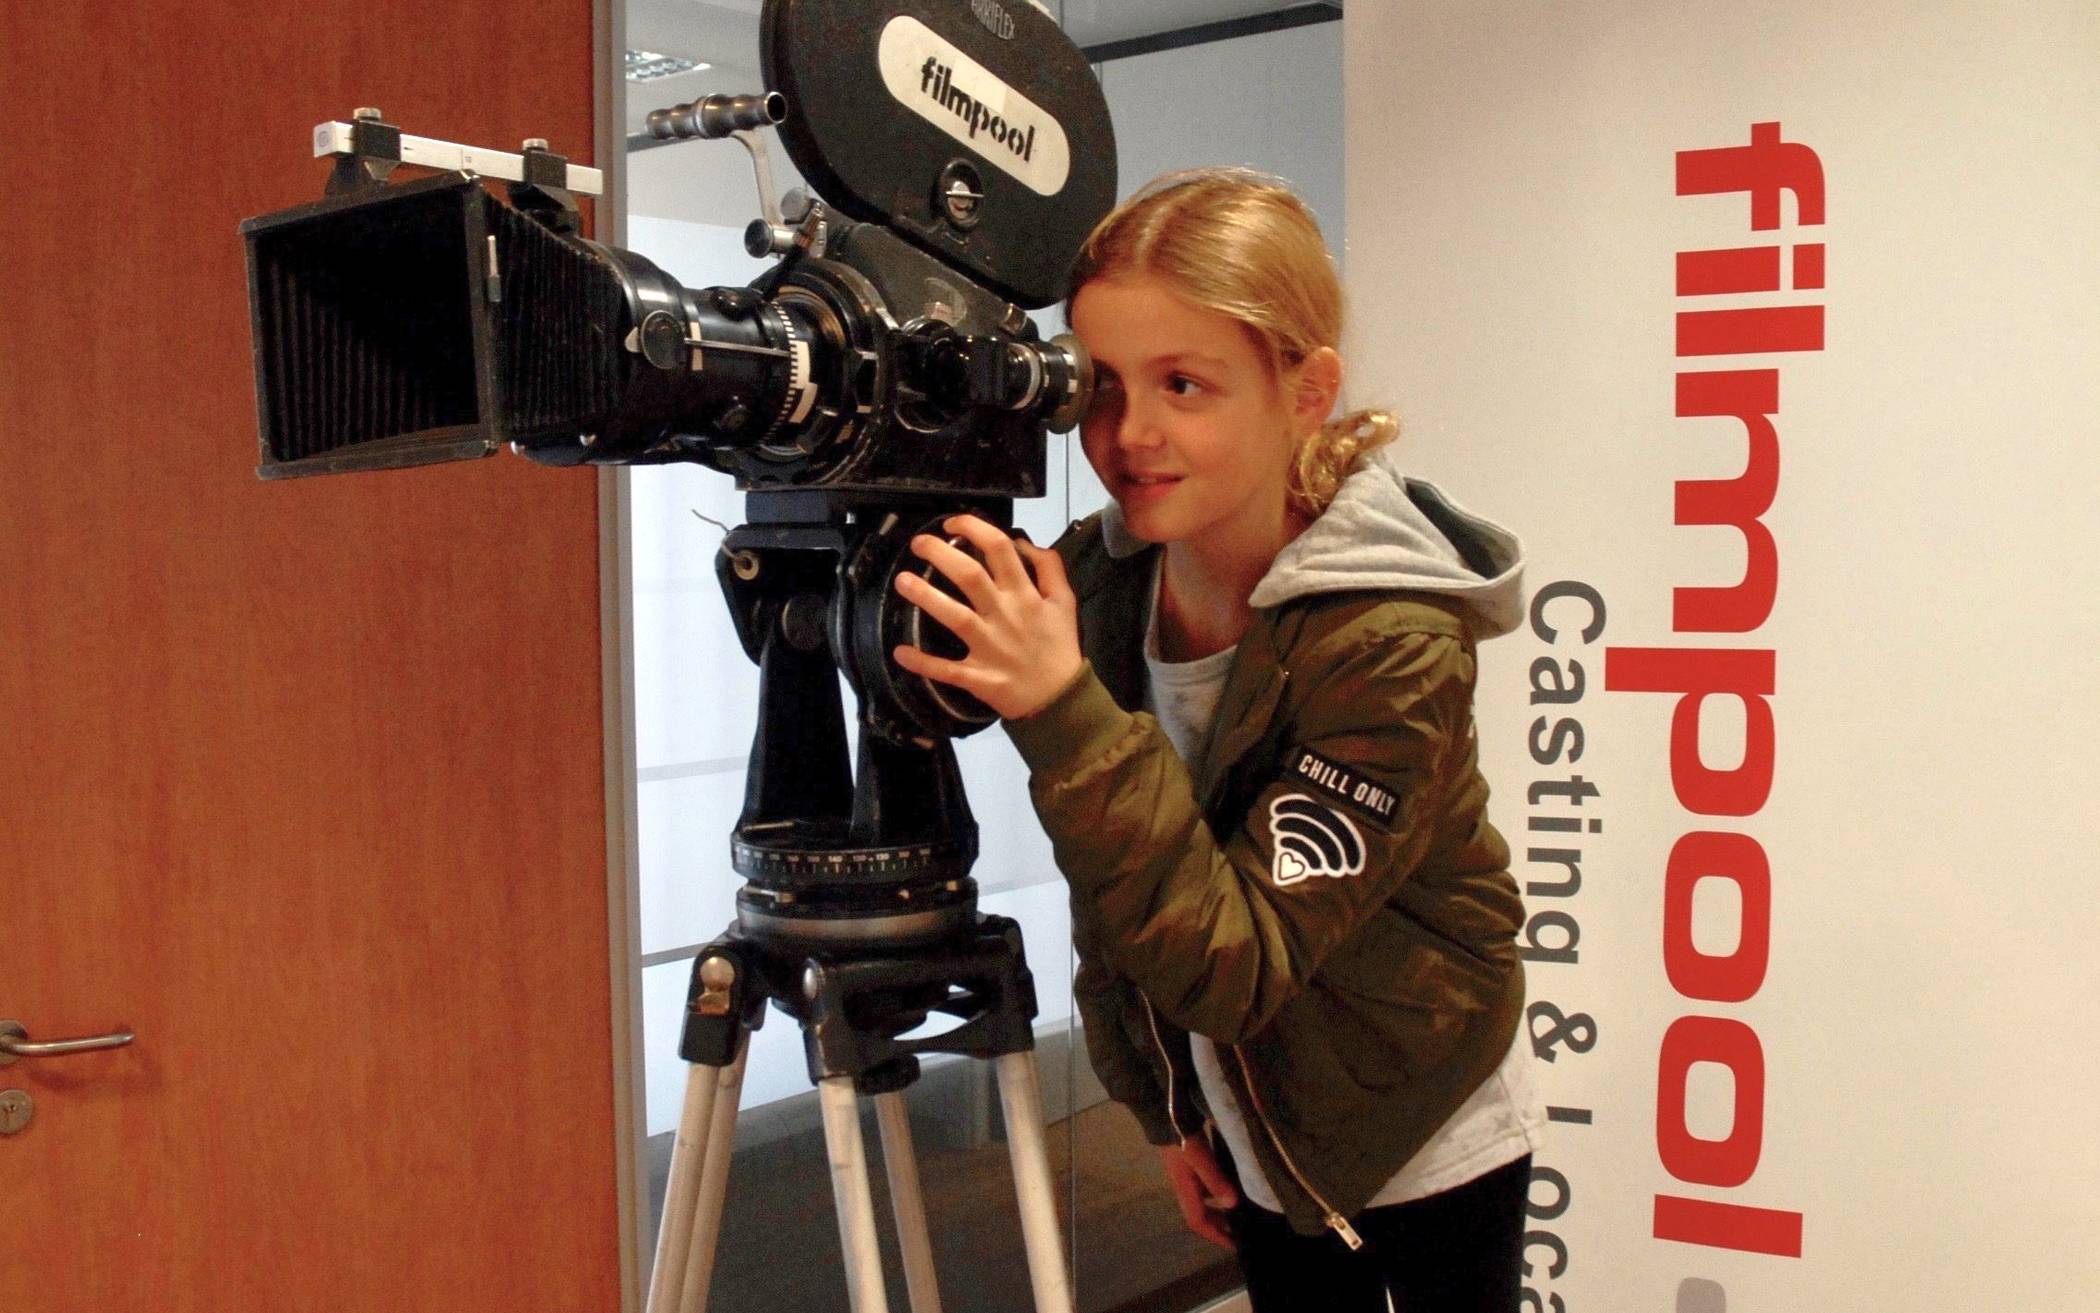  Die Agentur filmpool sucht kleine und große Talente für verschiedene Film-Formate beim Casting in Wuppertal. 